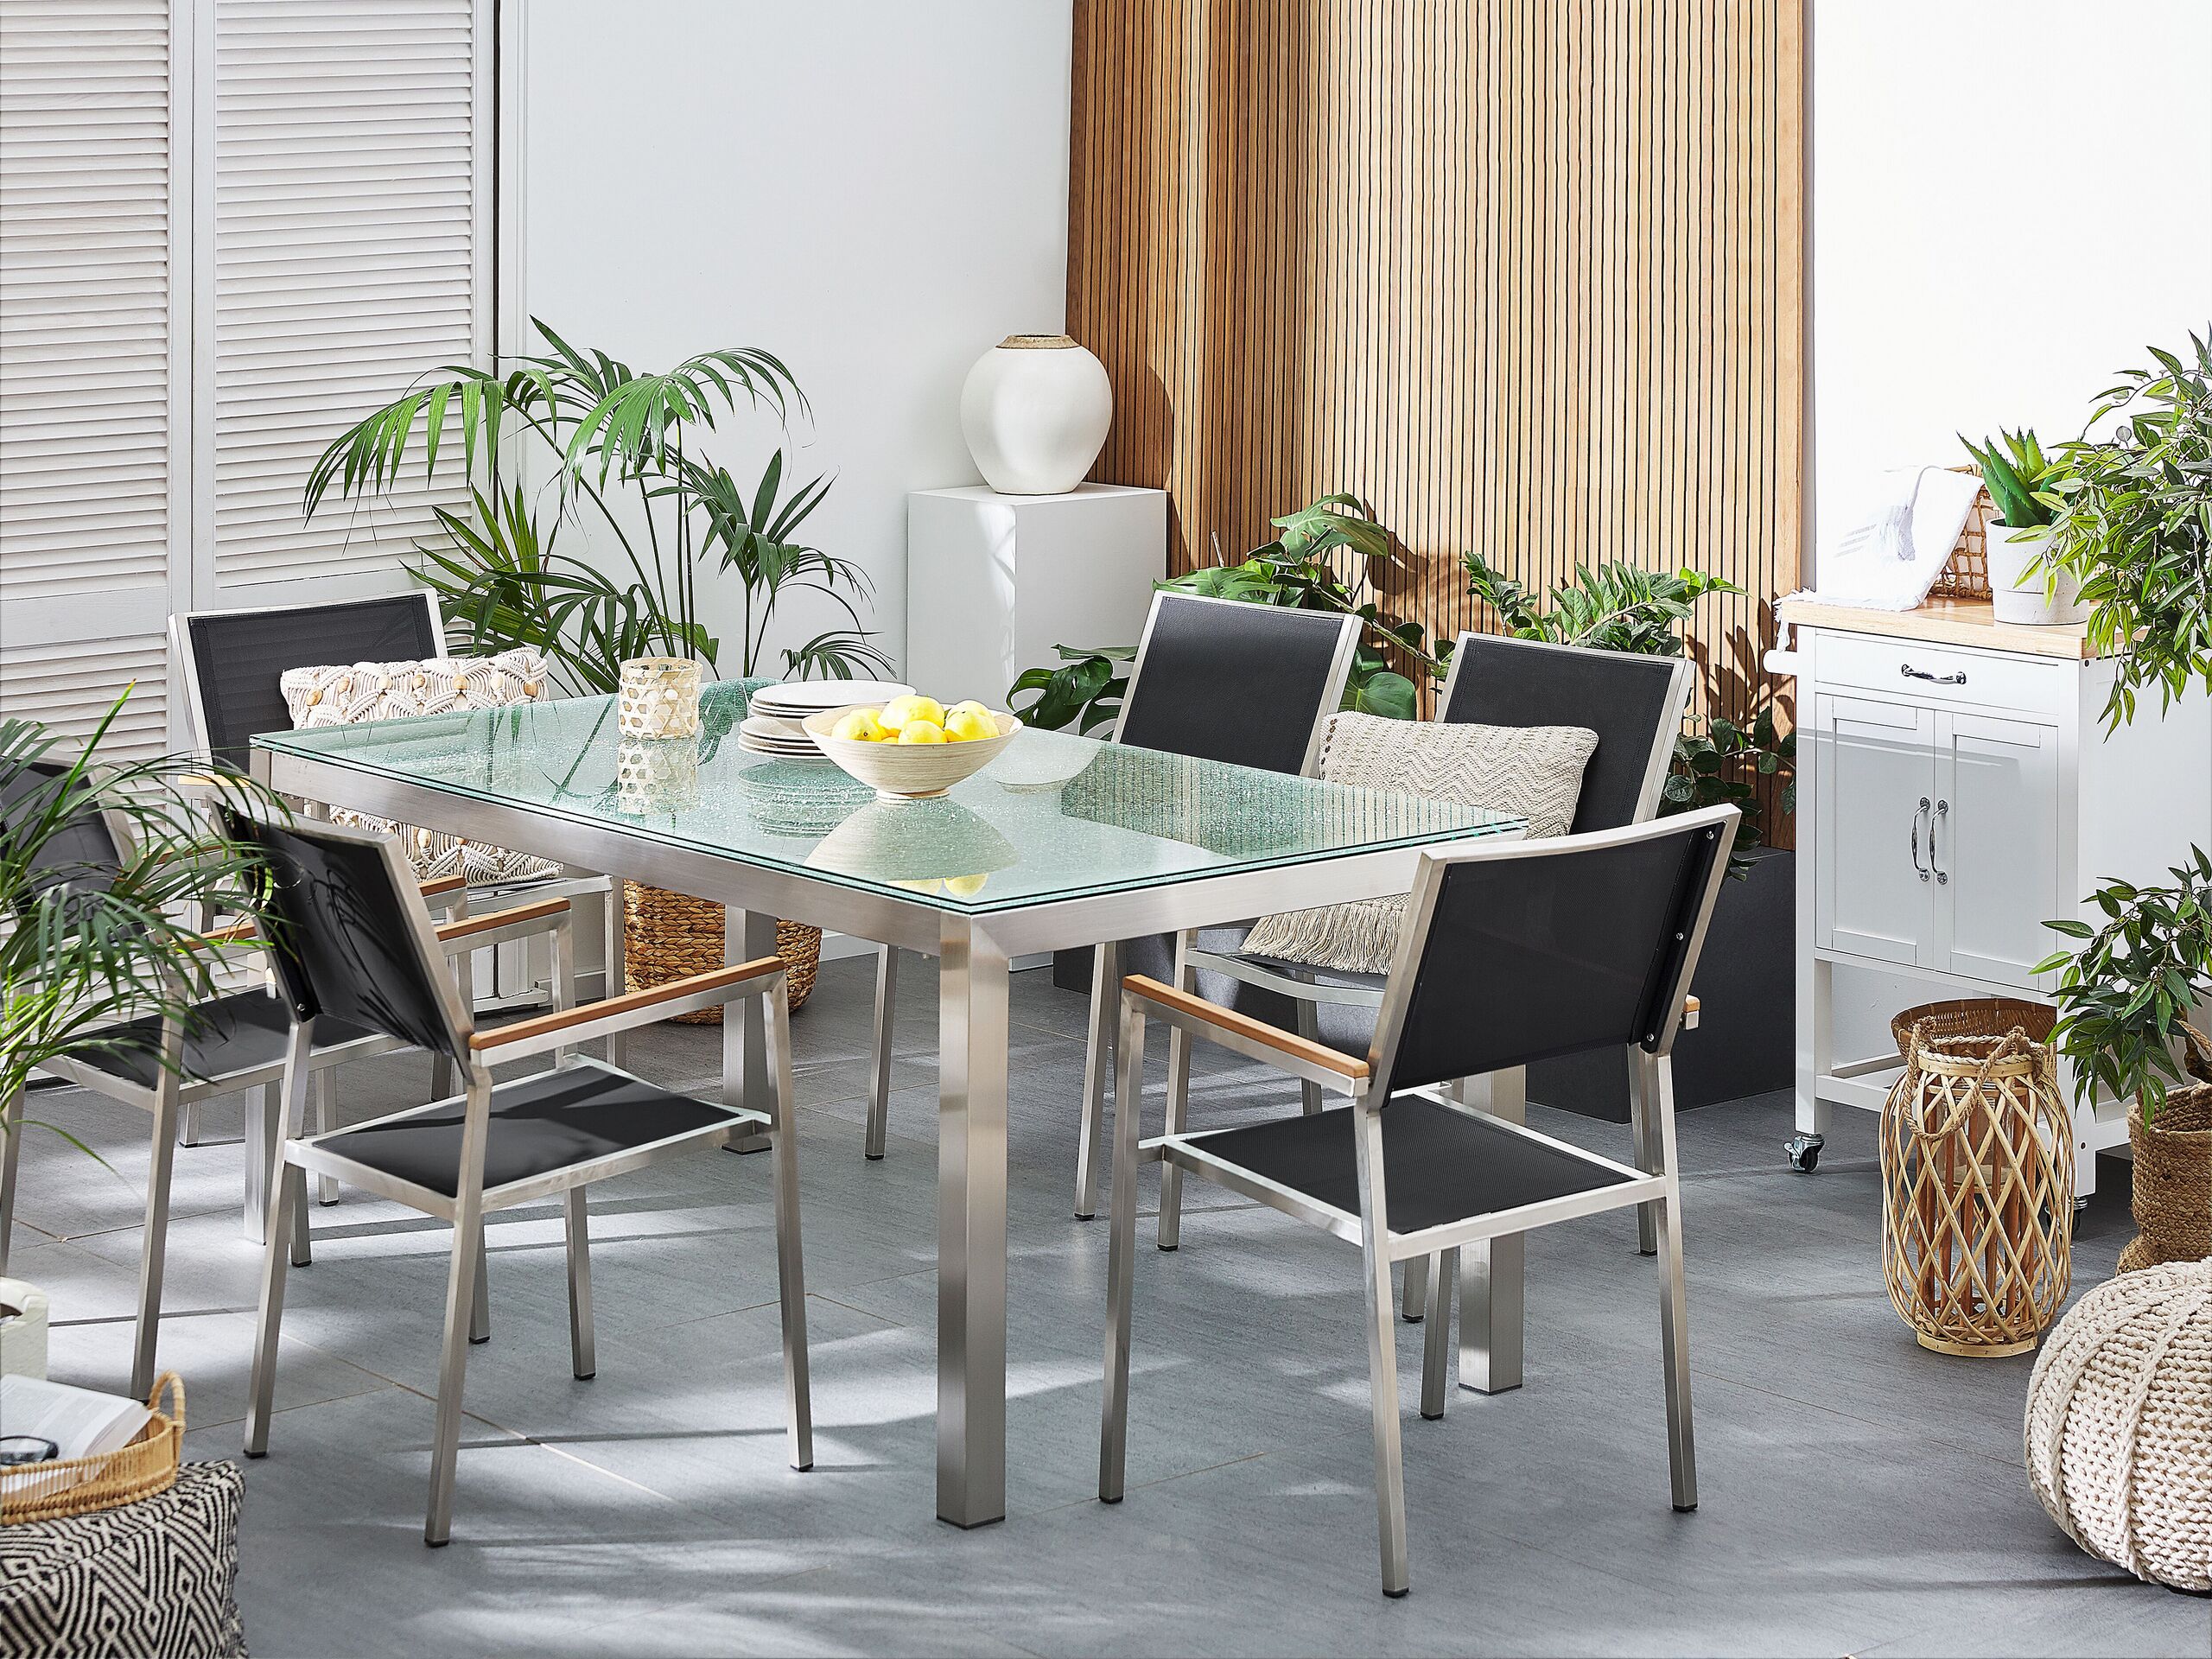 Conjunto de mesa com tampo em vidro temperado 180 x 90 cm e 6 cadeiras pretas GROSSETO